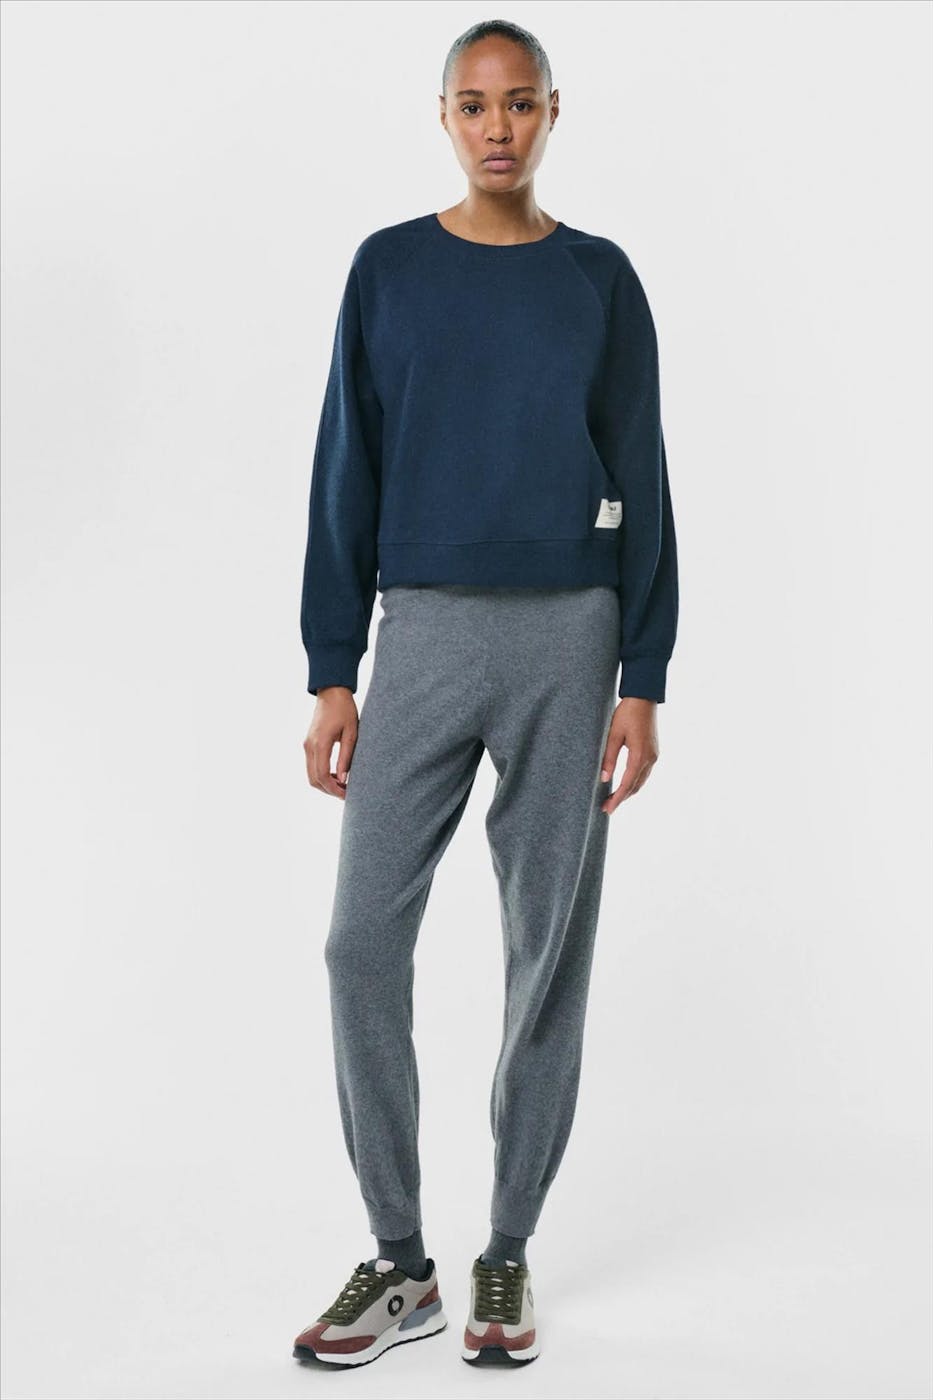 ECOALF - Donkerblauwe Shotta sweater